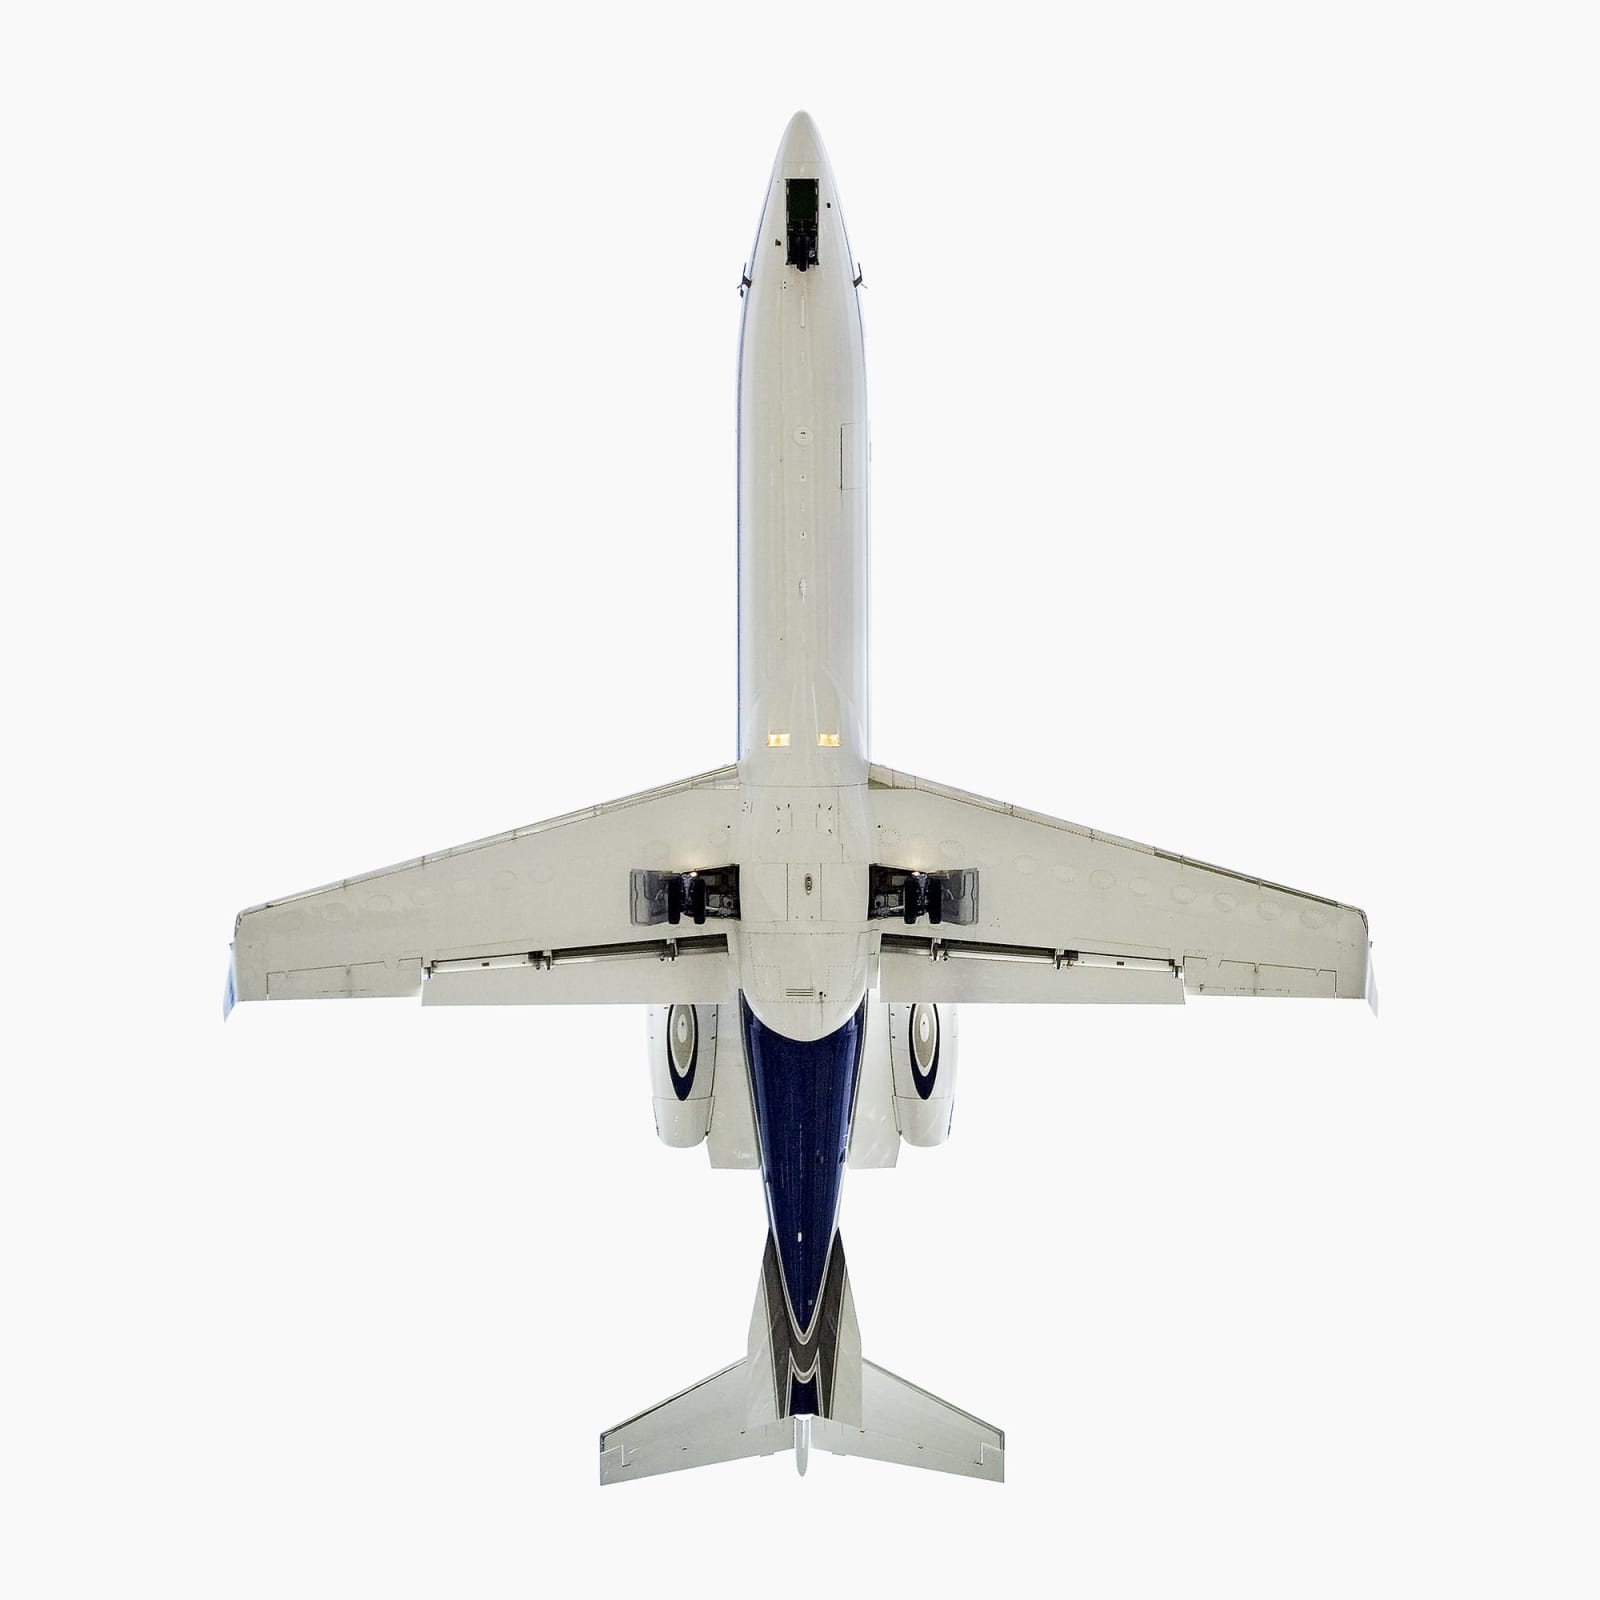 Jeffrey Milstein, Bombardier Learjet 45, 2006